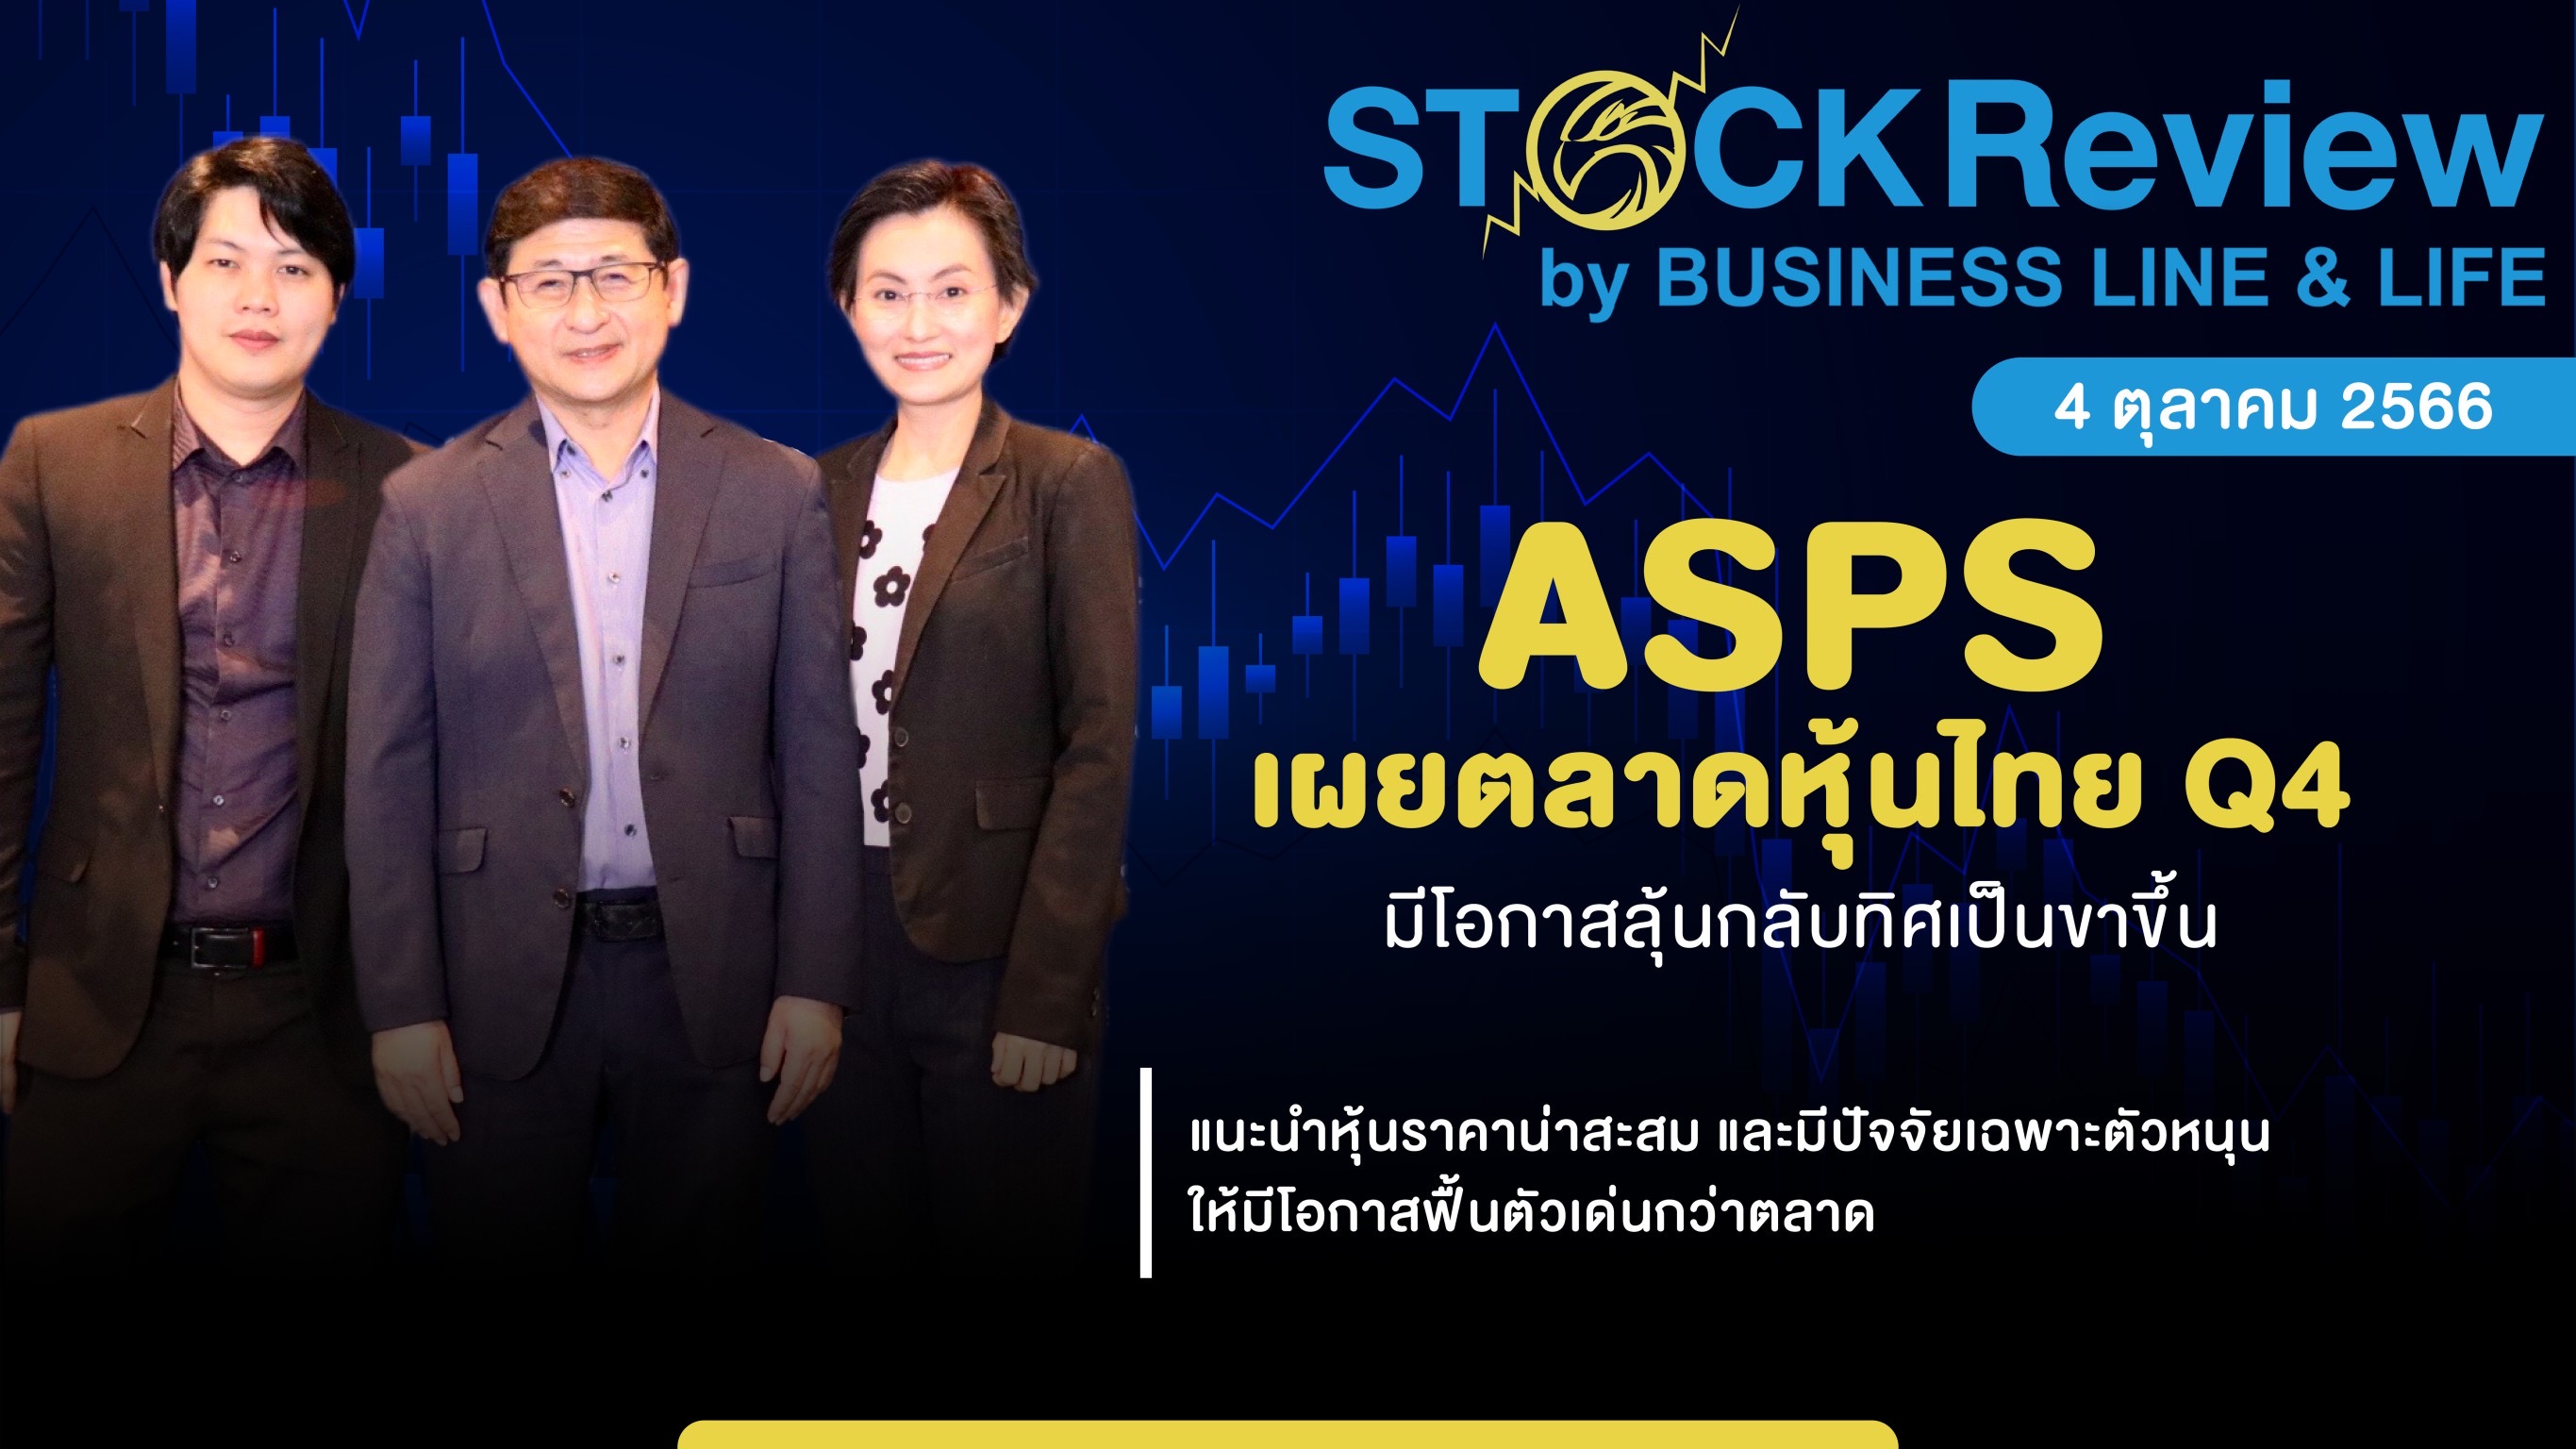 ASPS เผยตลาดหุ้นไทย Q4 มีโอกาสลุ้นกลับทิศเป็นขาขึ้นแนะสะสมหุ้นพื้นฐานเด่น